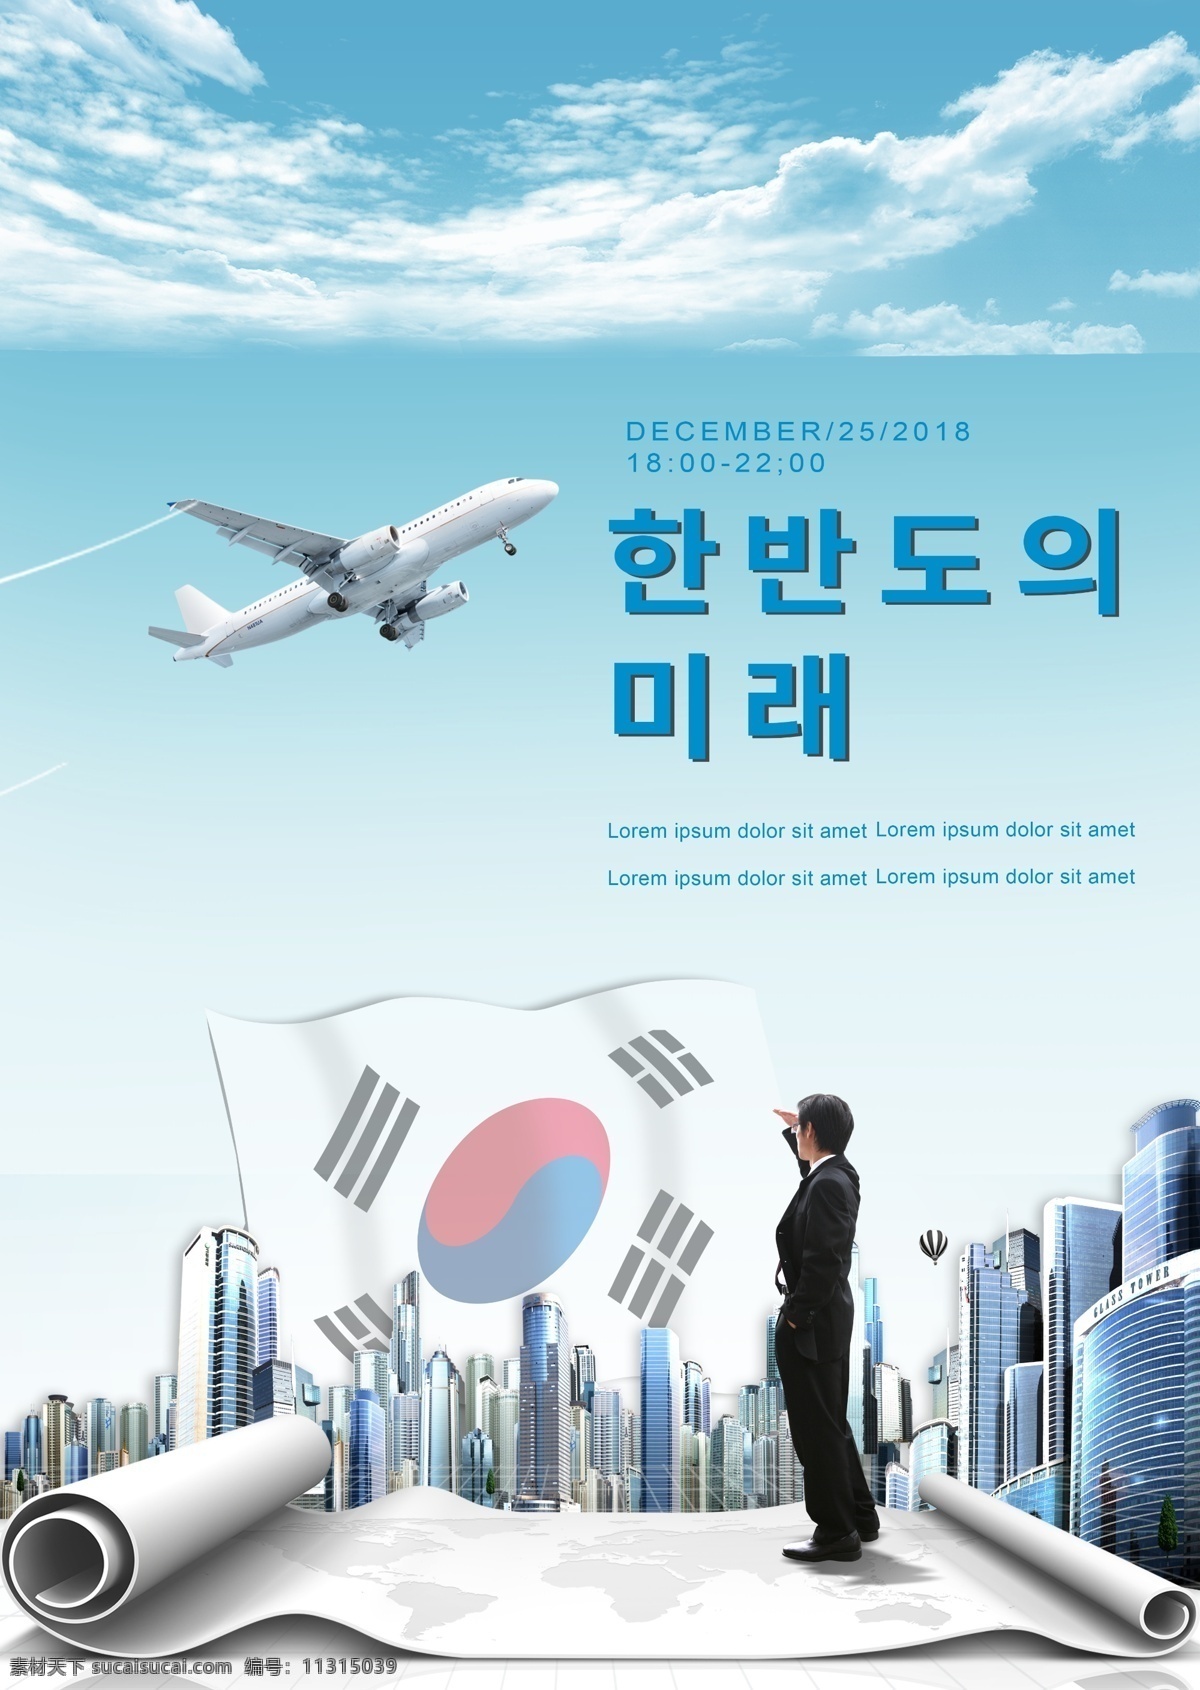 韩国 科技合作 安全 未来 城市发展 希望 海报 建造 合作 城市的发展 安全建设 科学和技术 希望将来